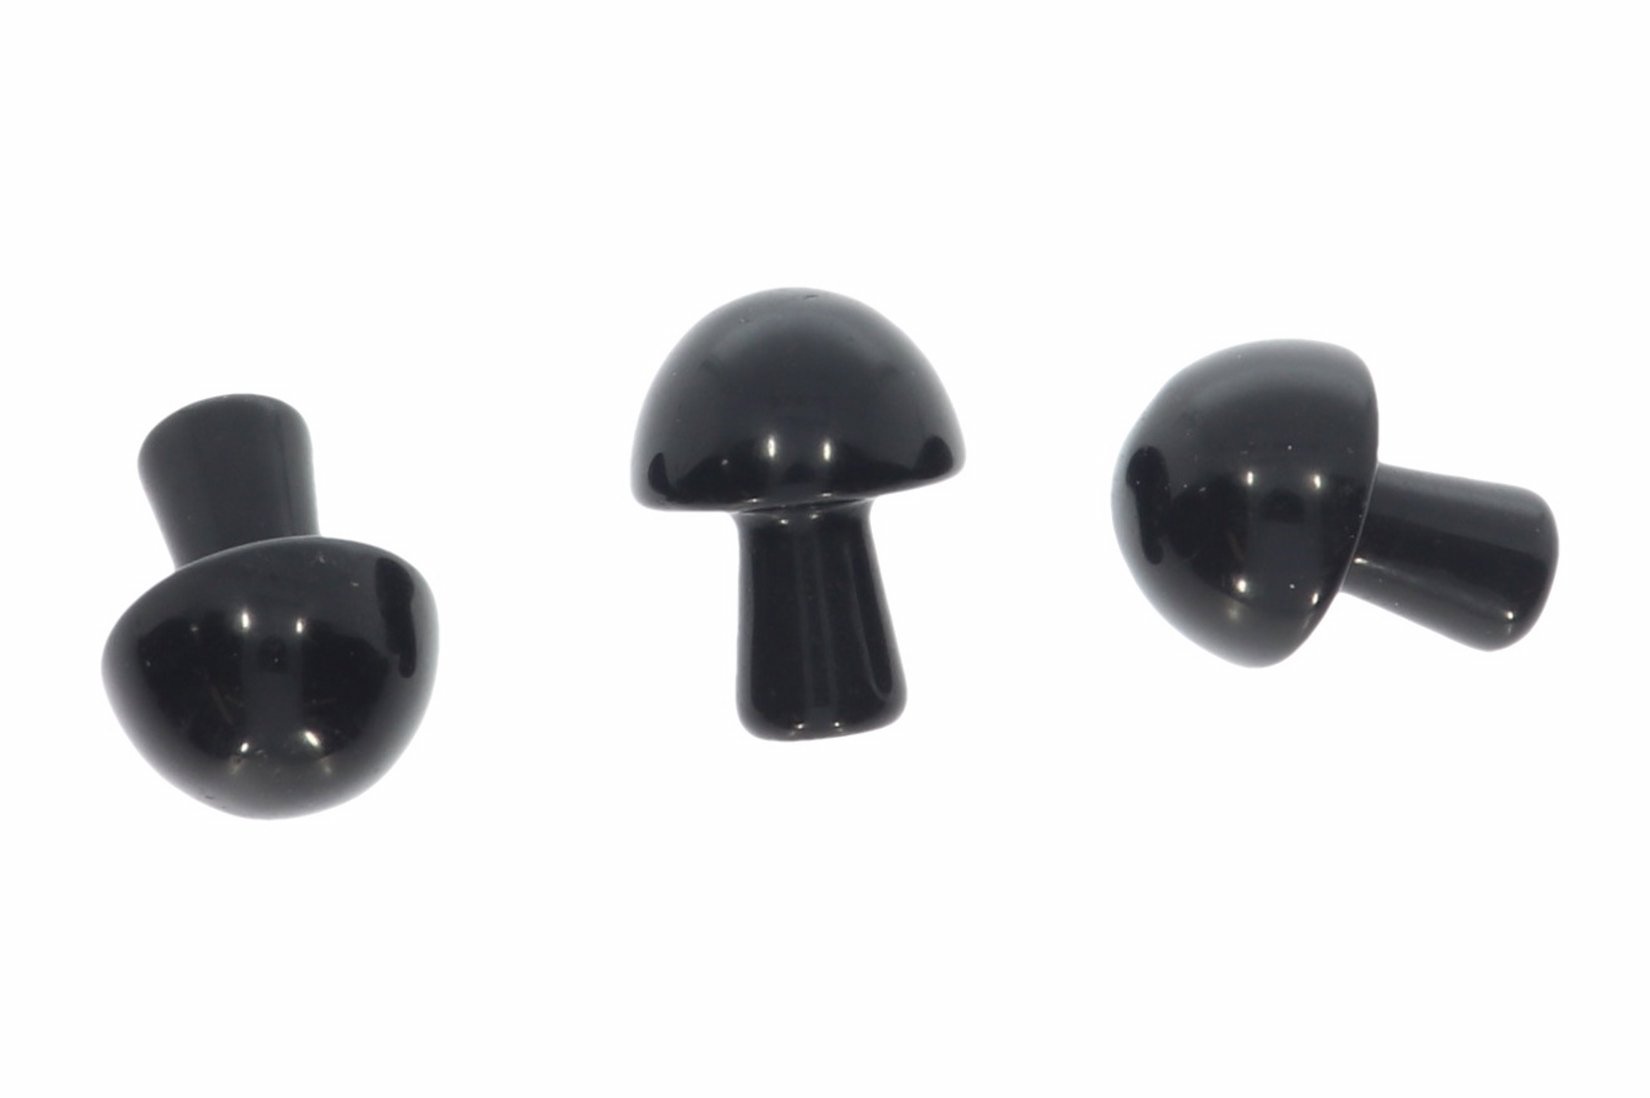 Obsidian schwarz Gua Sha Stone 21x16mm - Massagegerät Wellness Gesichtsmassage HS1247